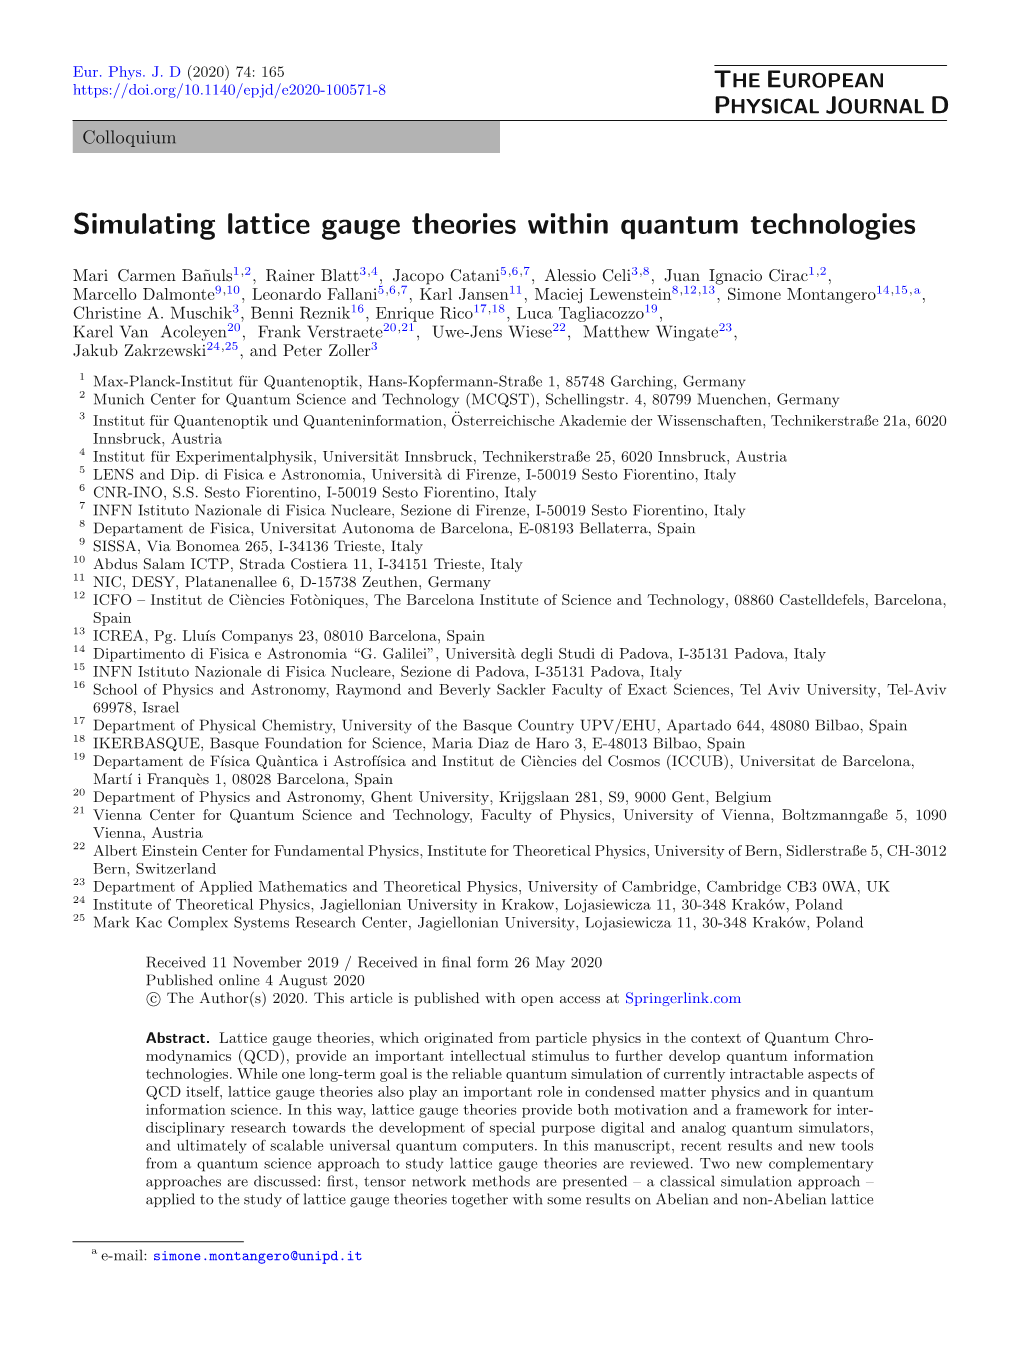 Simulating Lattice Gauge Theories Within Quantum Technologies.Pdf